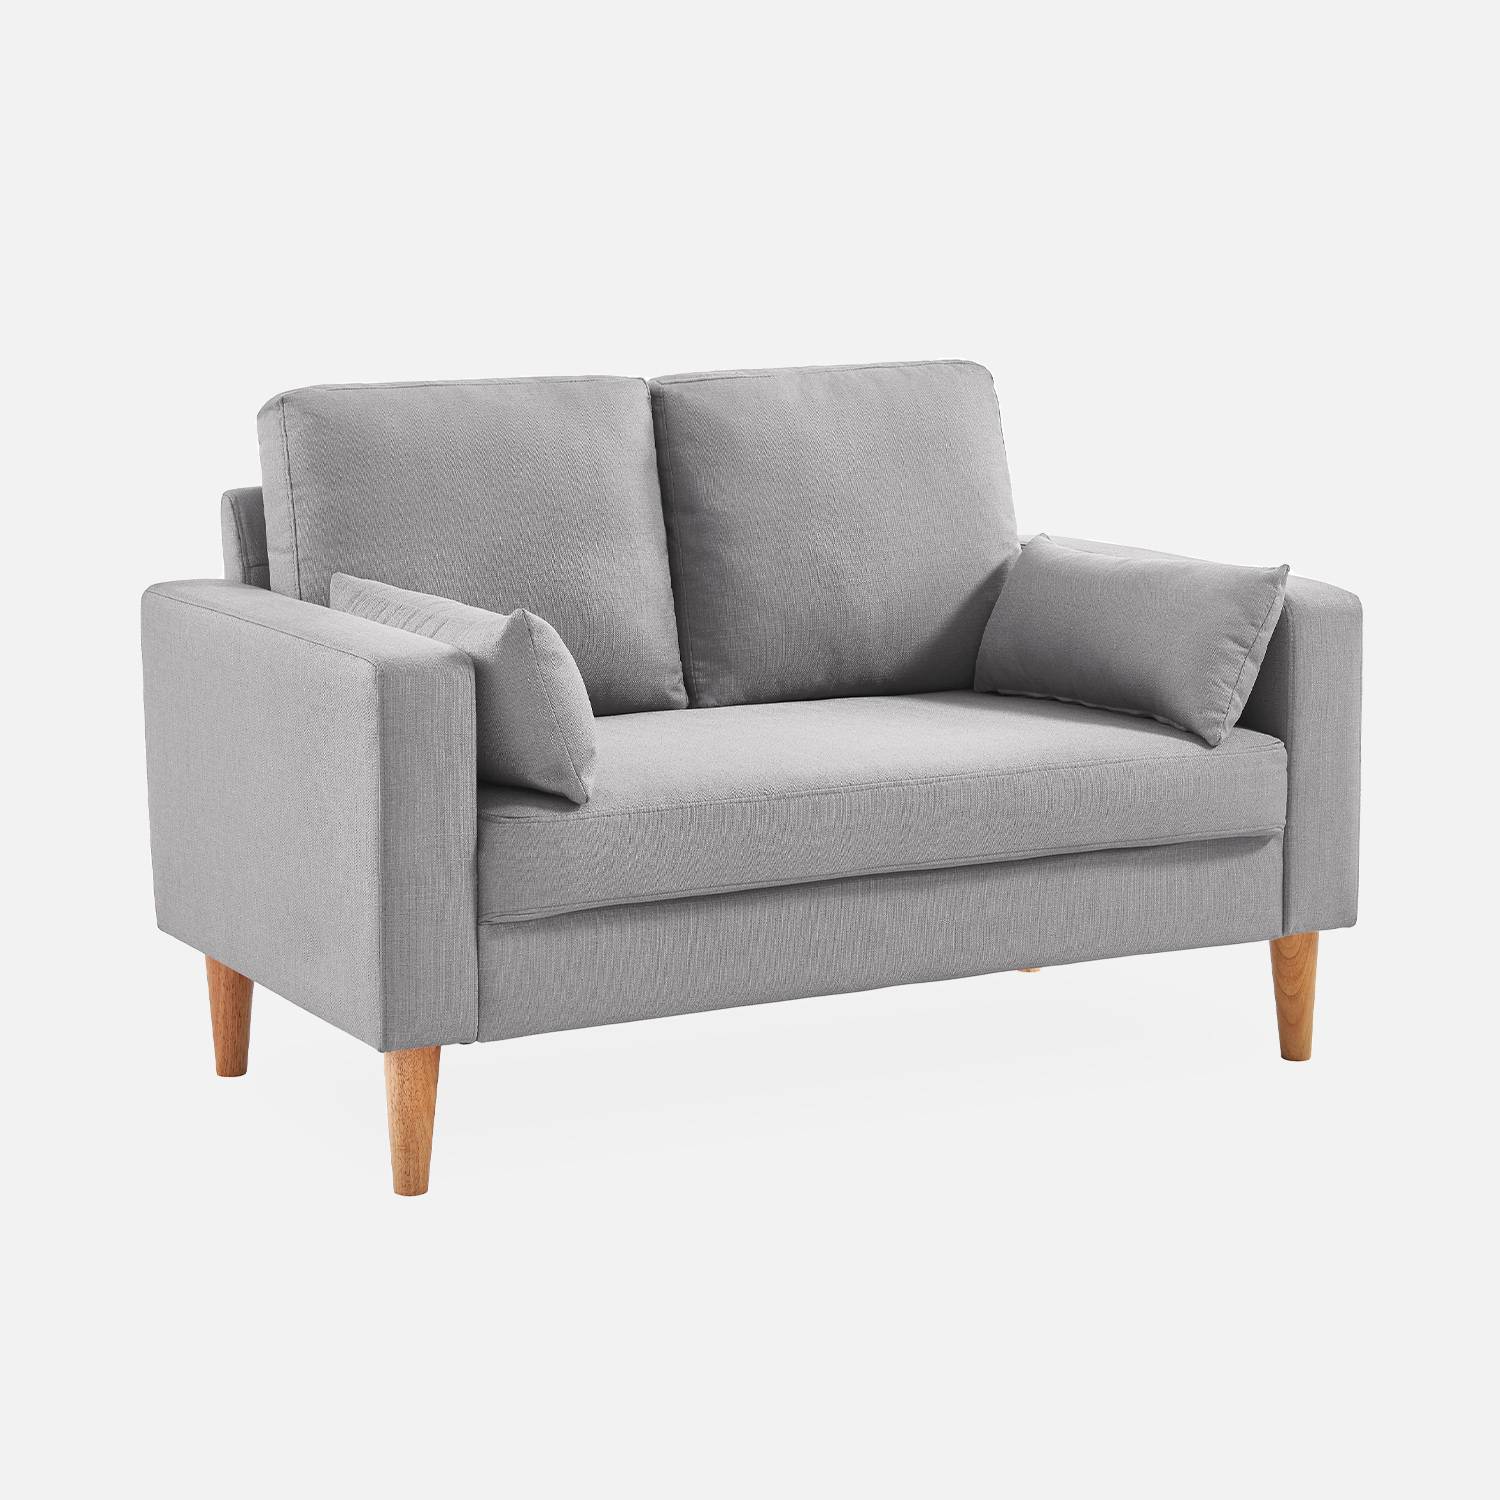 2-Sitz Sofa - Bjorn 2 - Hellgrau, Gestell aus Eukalyptus, Bezug aus Polyester, Holzbeine, Sofa im skandinavischen Stil  Photo2